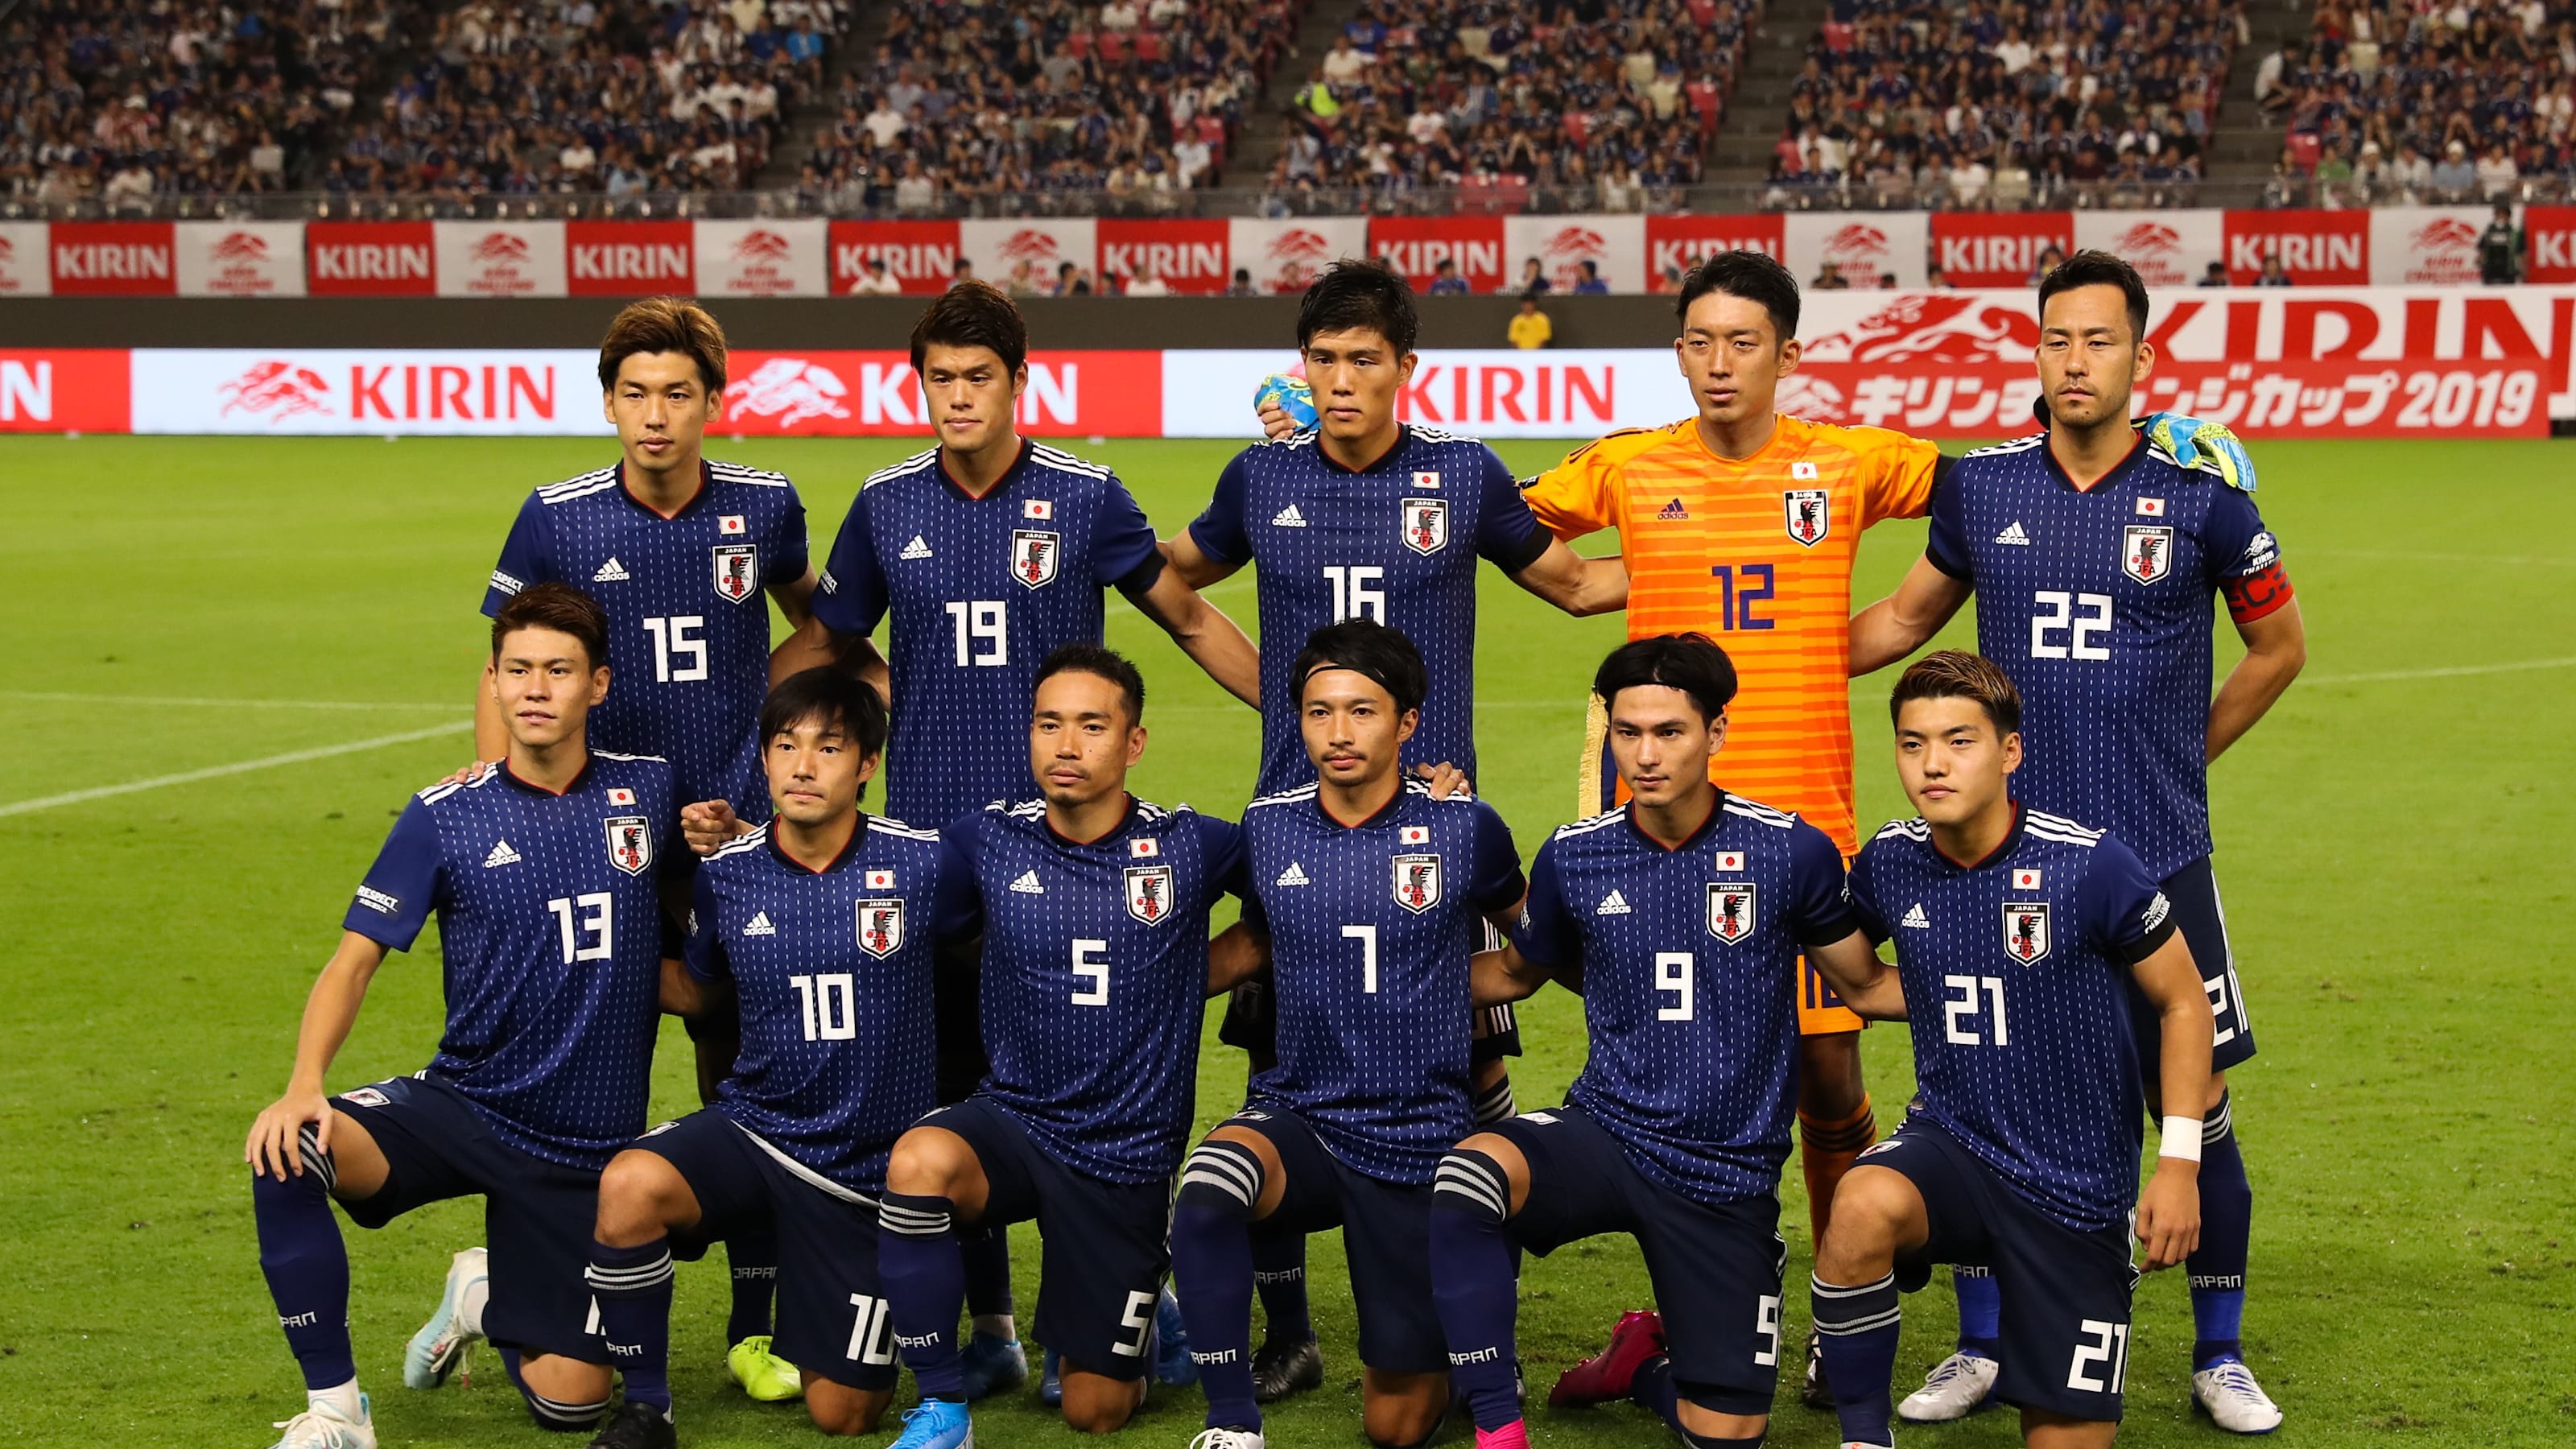 サッカー世界ランキング 日本代表は28位をキープし アジア最上位に 11月28日最新版